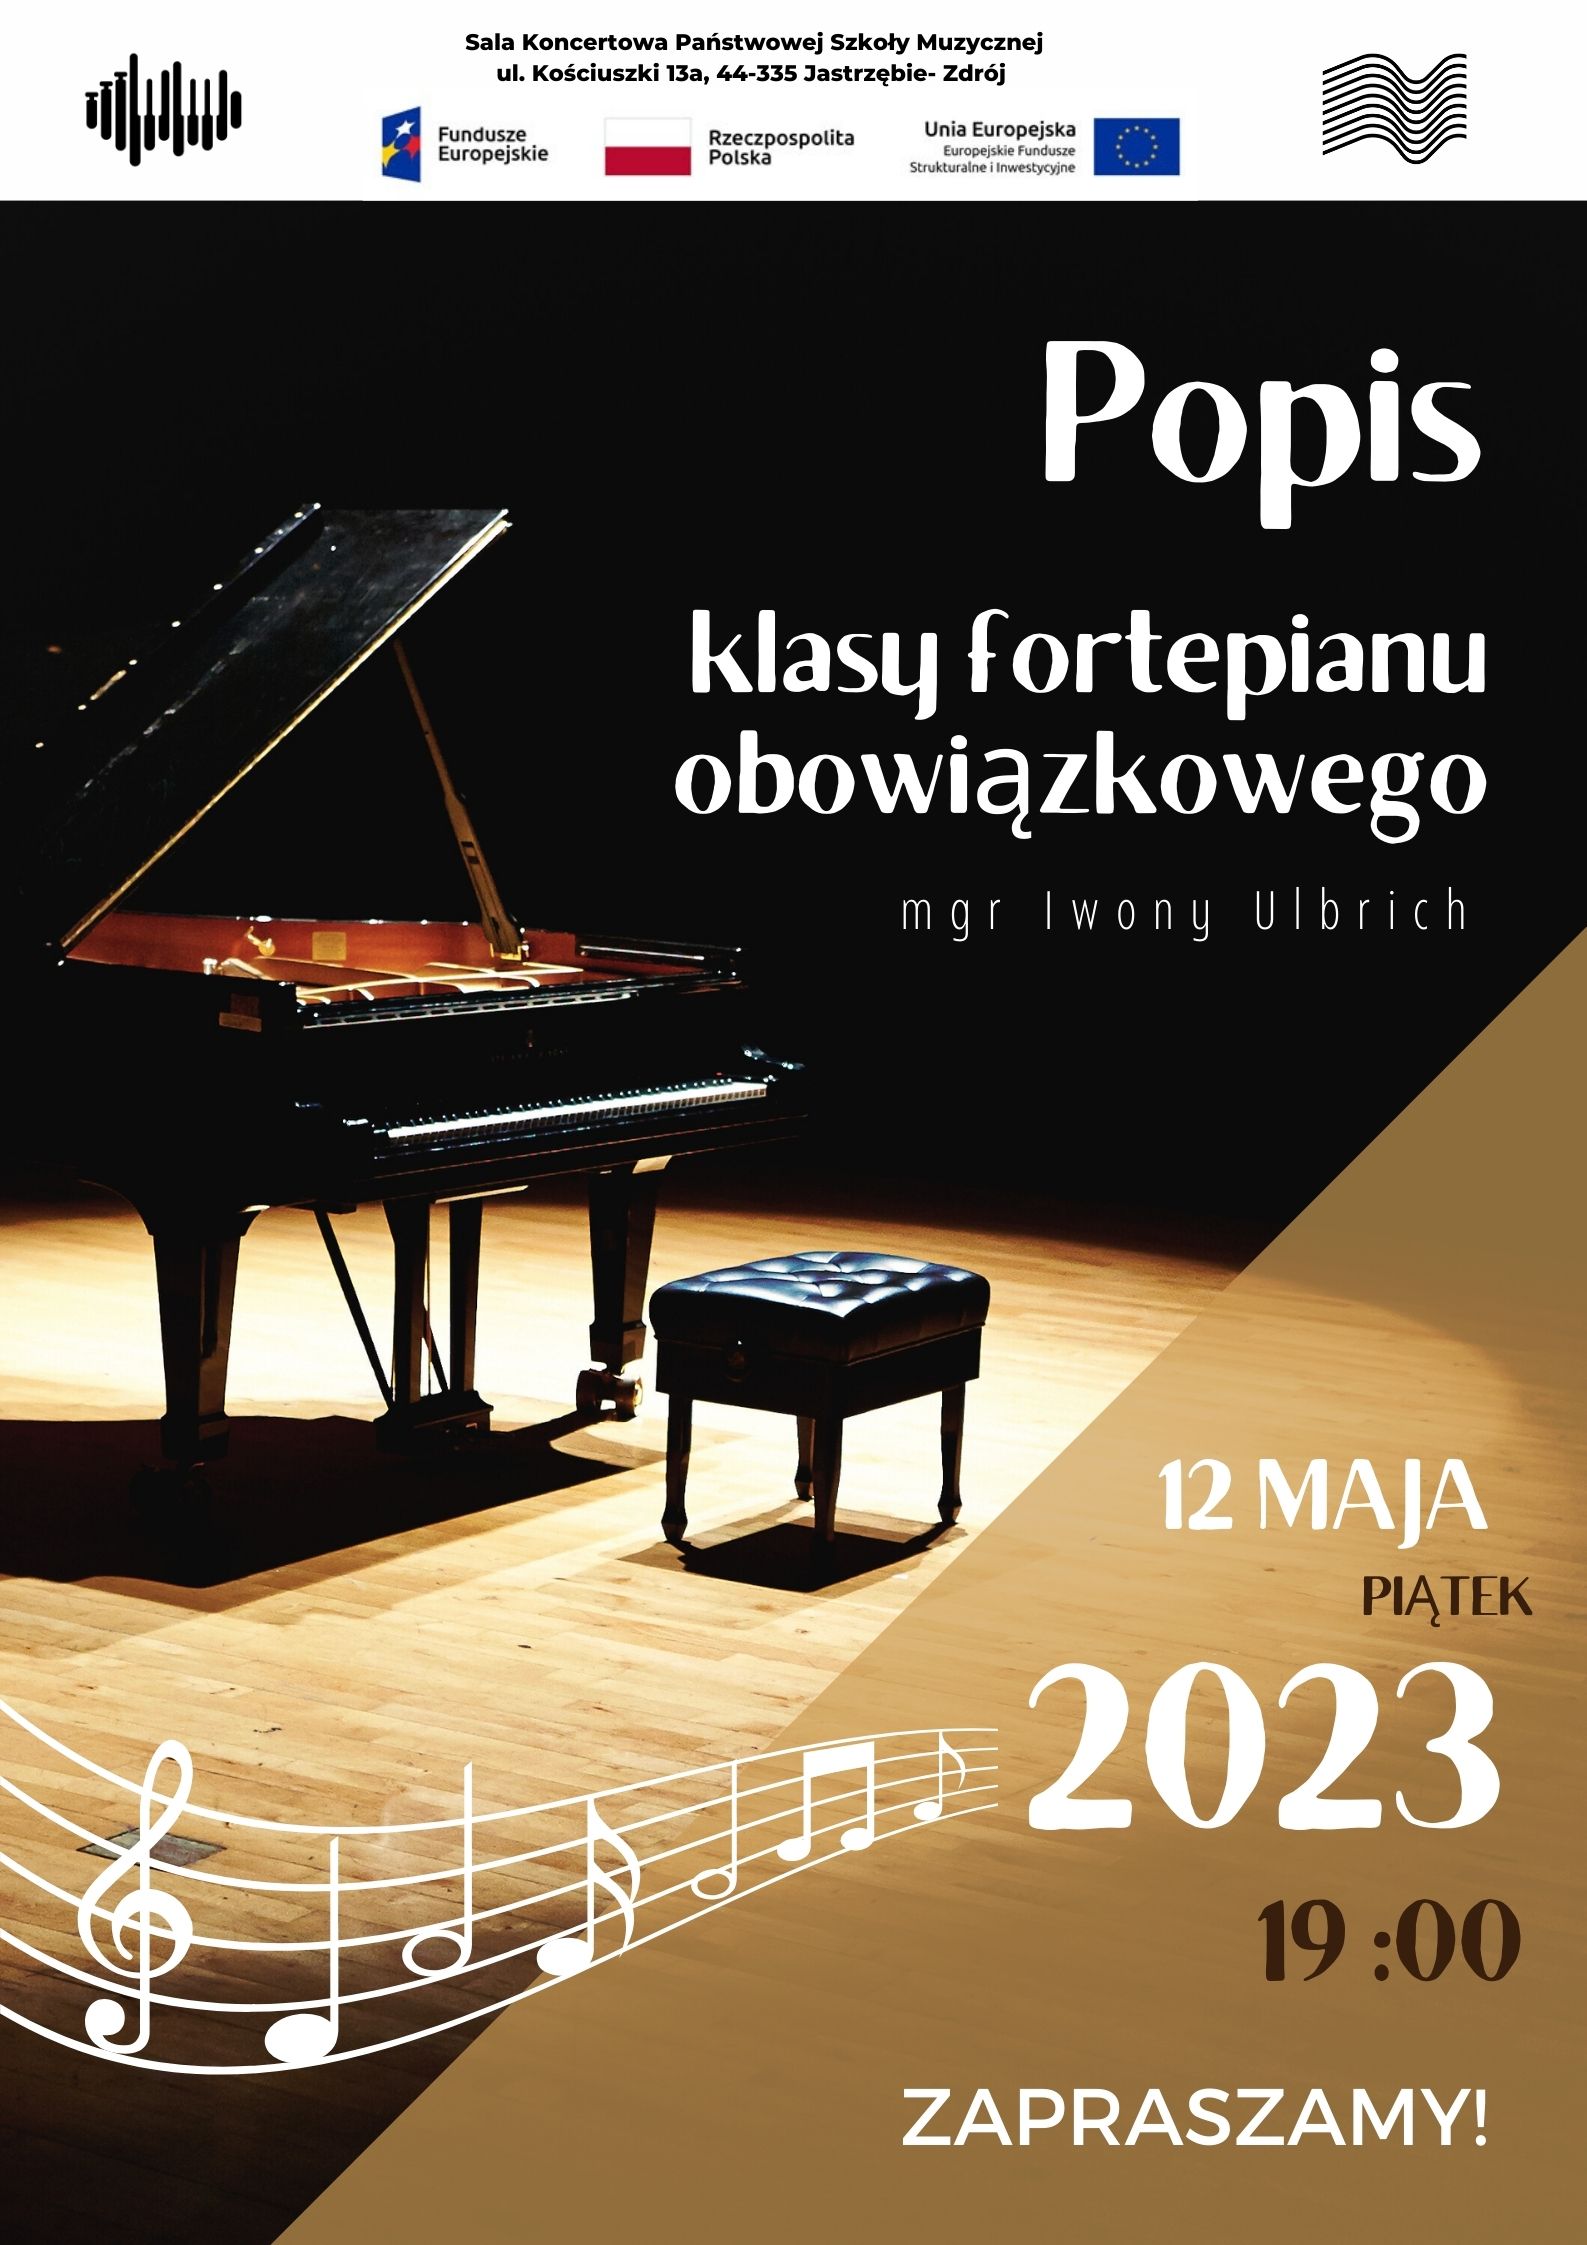 12.05.2023 Plakat na popis klasy fortepianu obowiązkowego